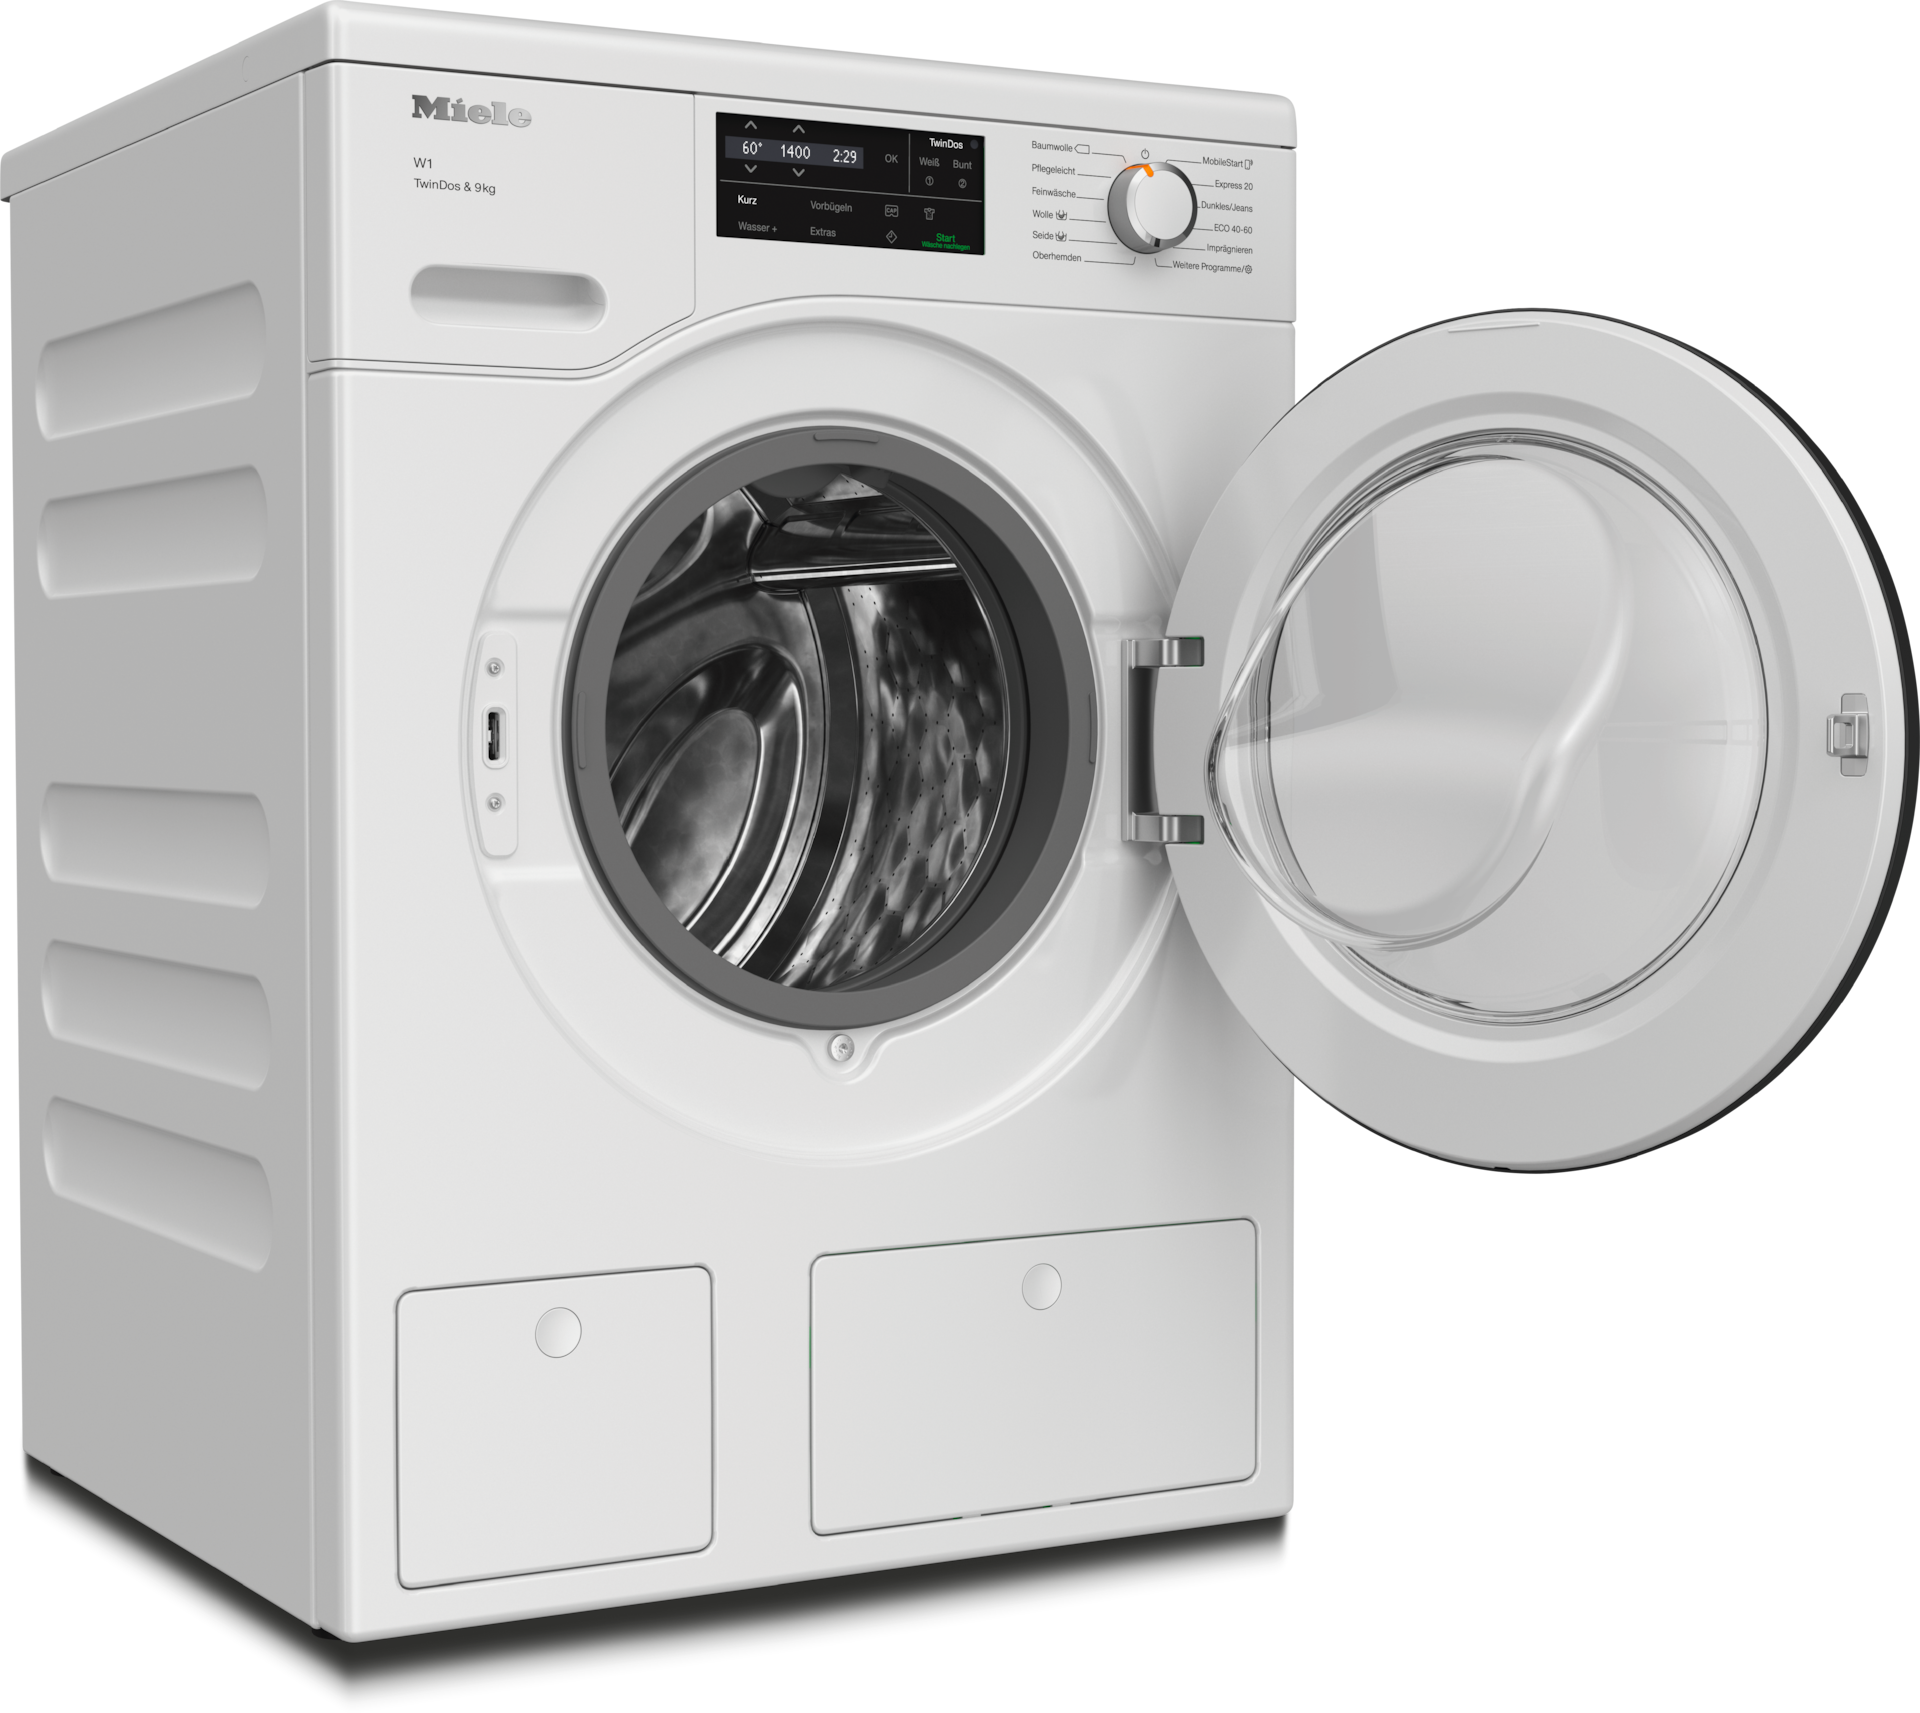 Waschmaschinen - WCG660 WPS TDos&9kg Lotosweiß - 2